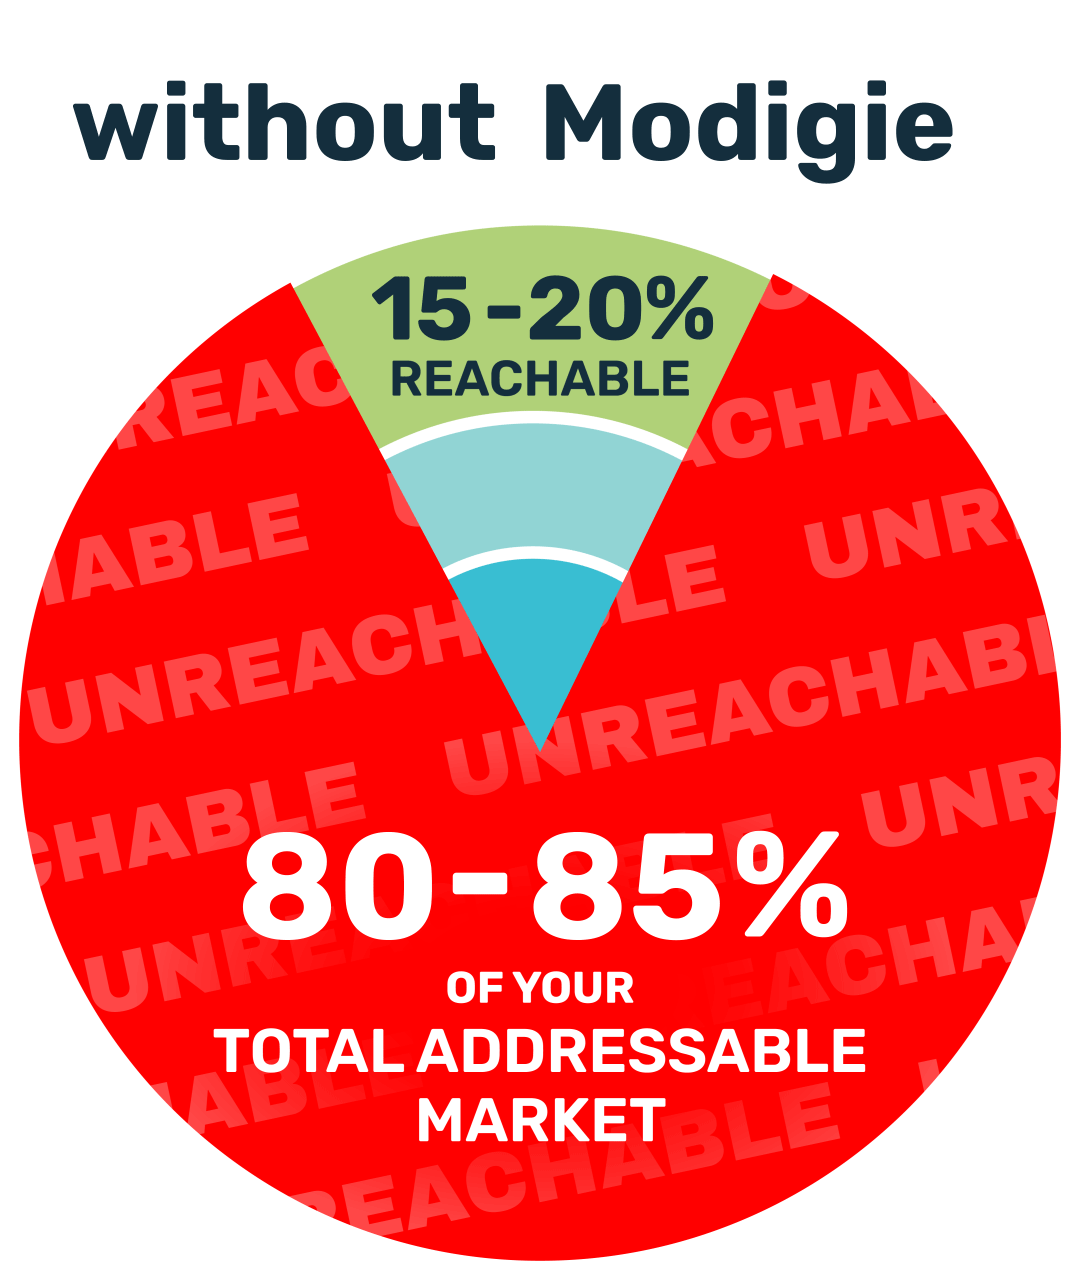 Modigie's effect on TAM reachability